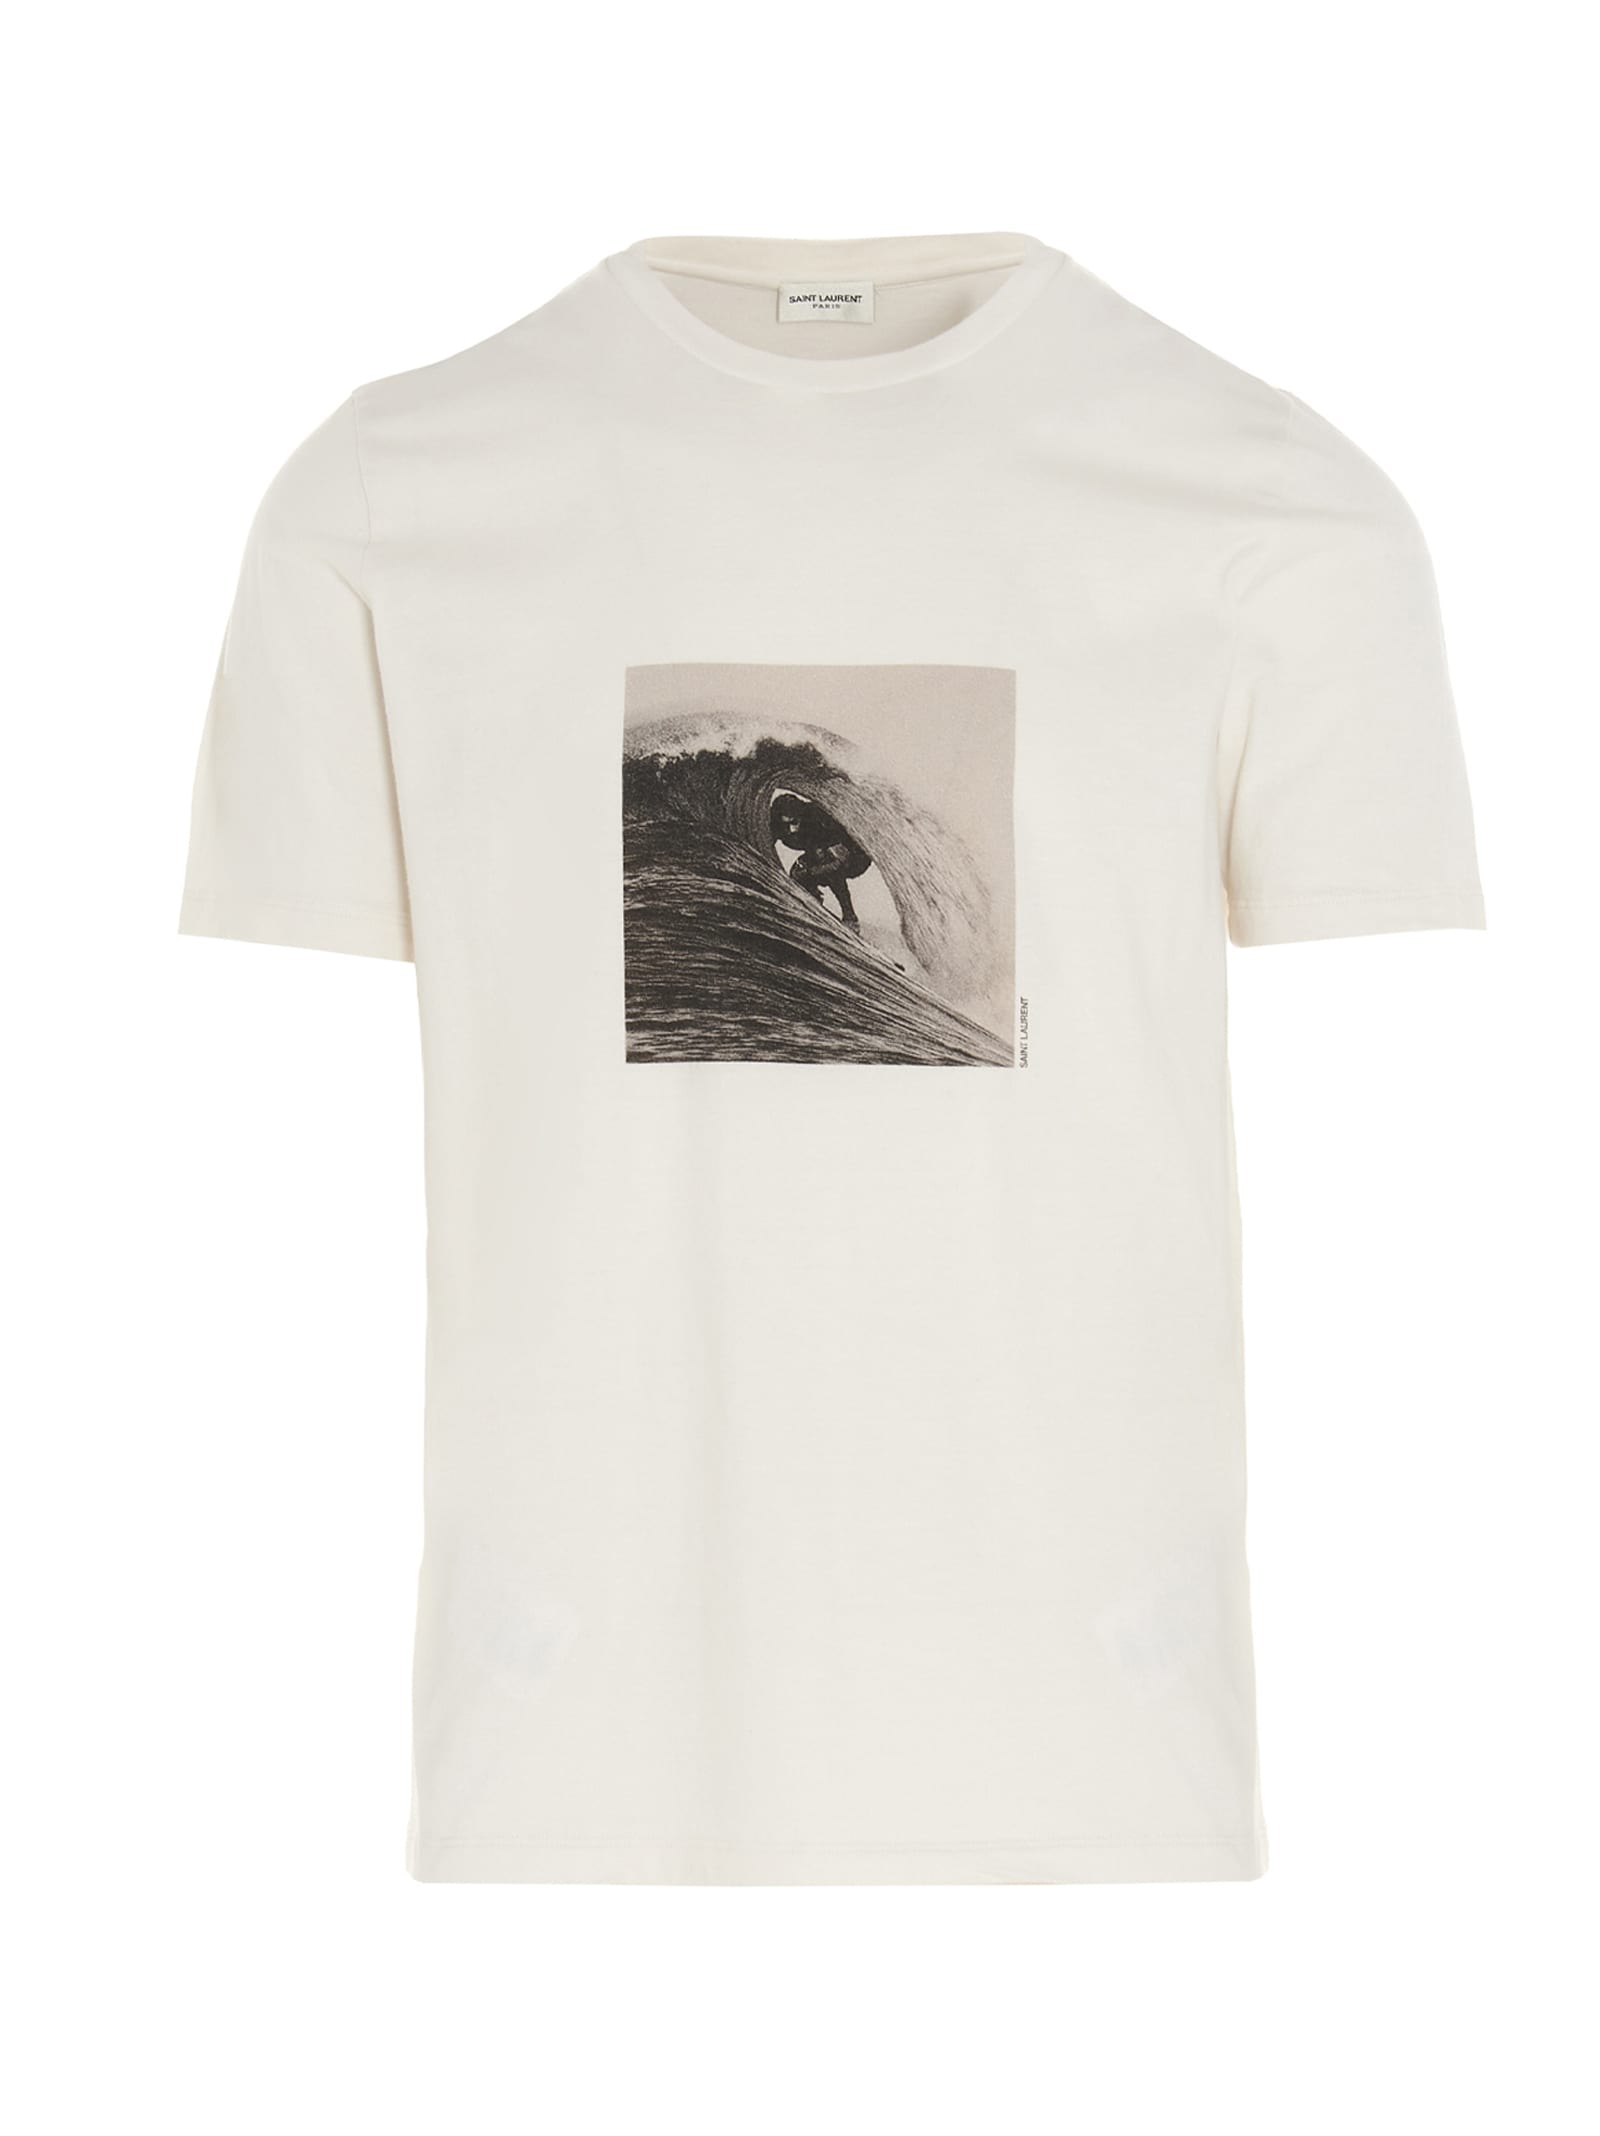 Saint Laurent surfer T-shirt